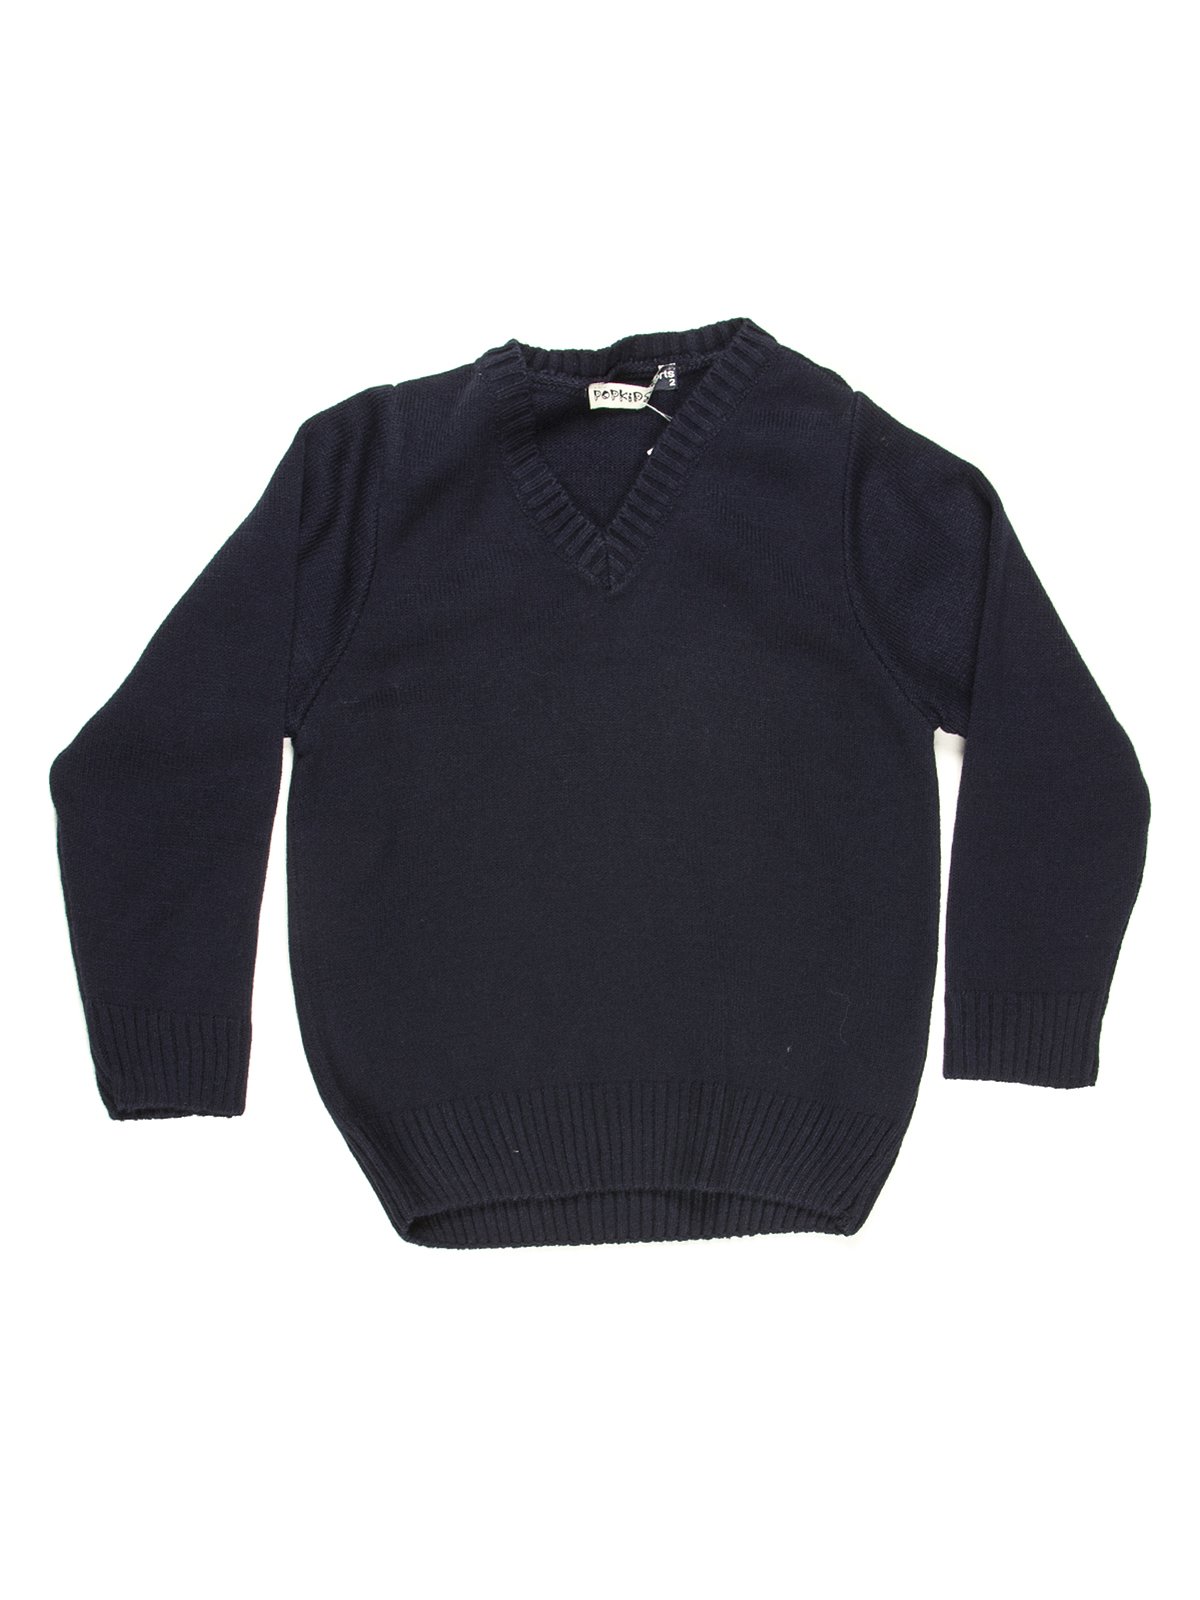 Пуловер темно-синий теплый | 712182